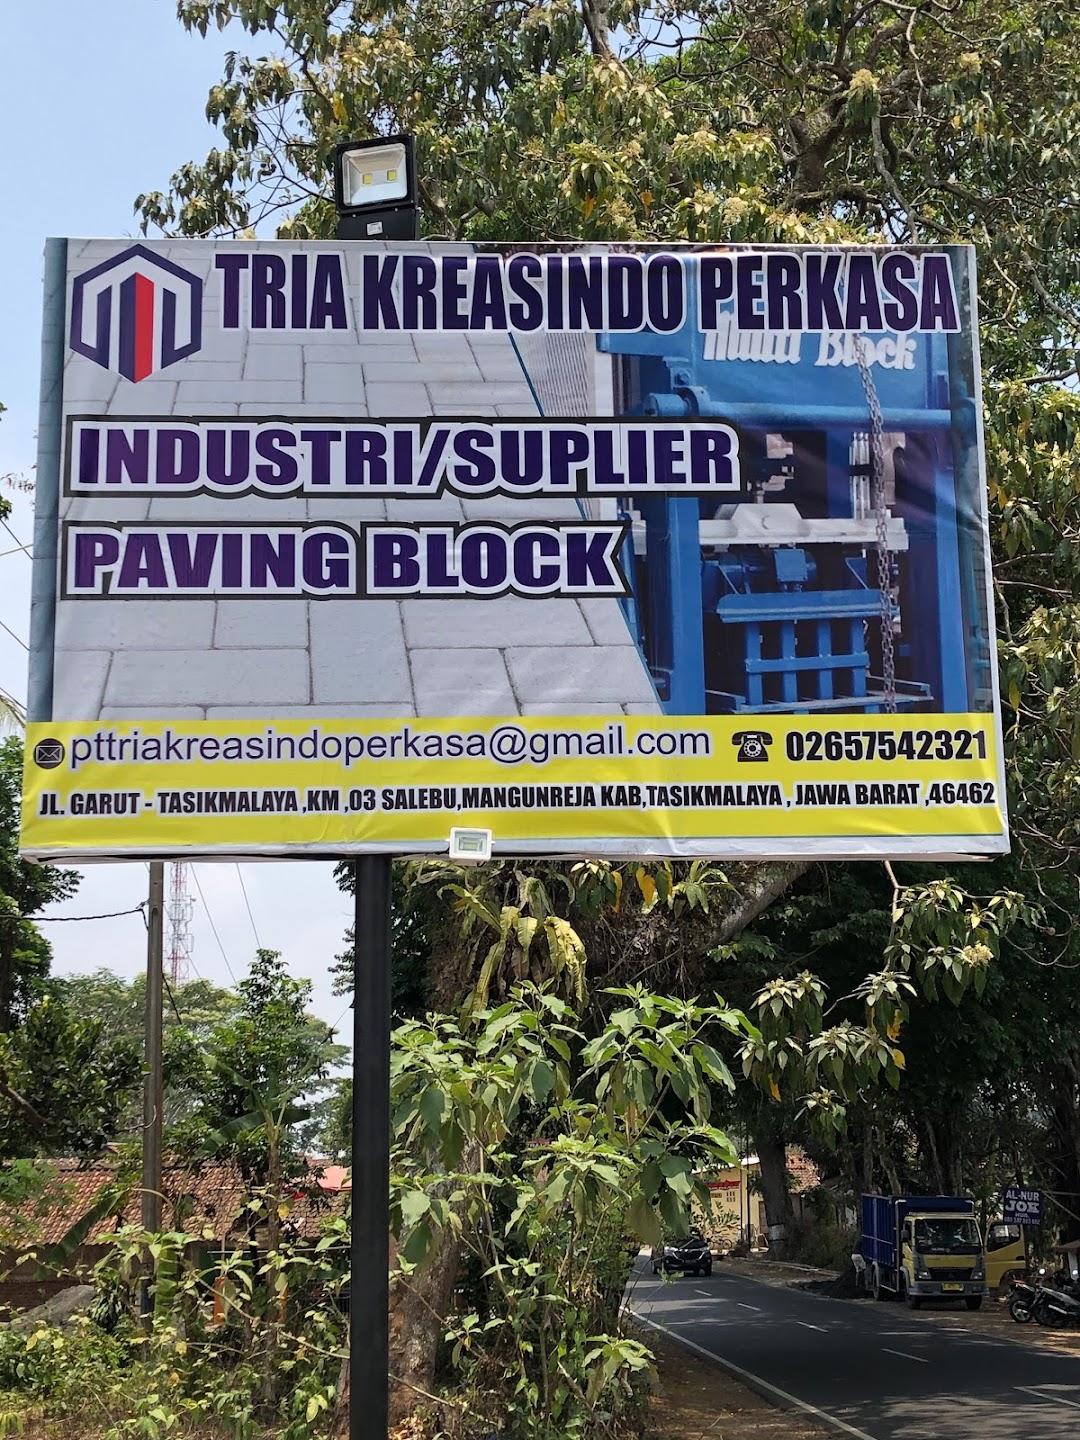 PT Tria Kreasindo Perkasa